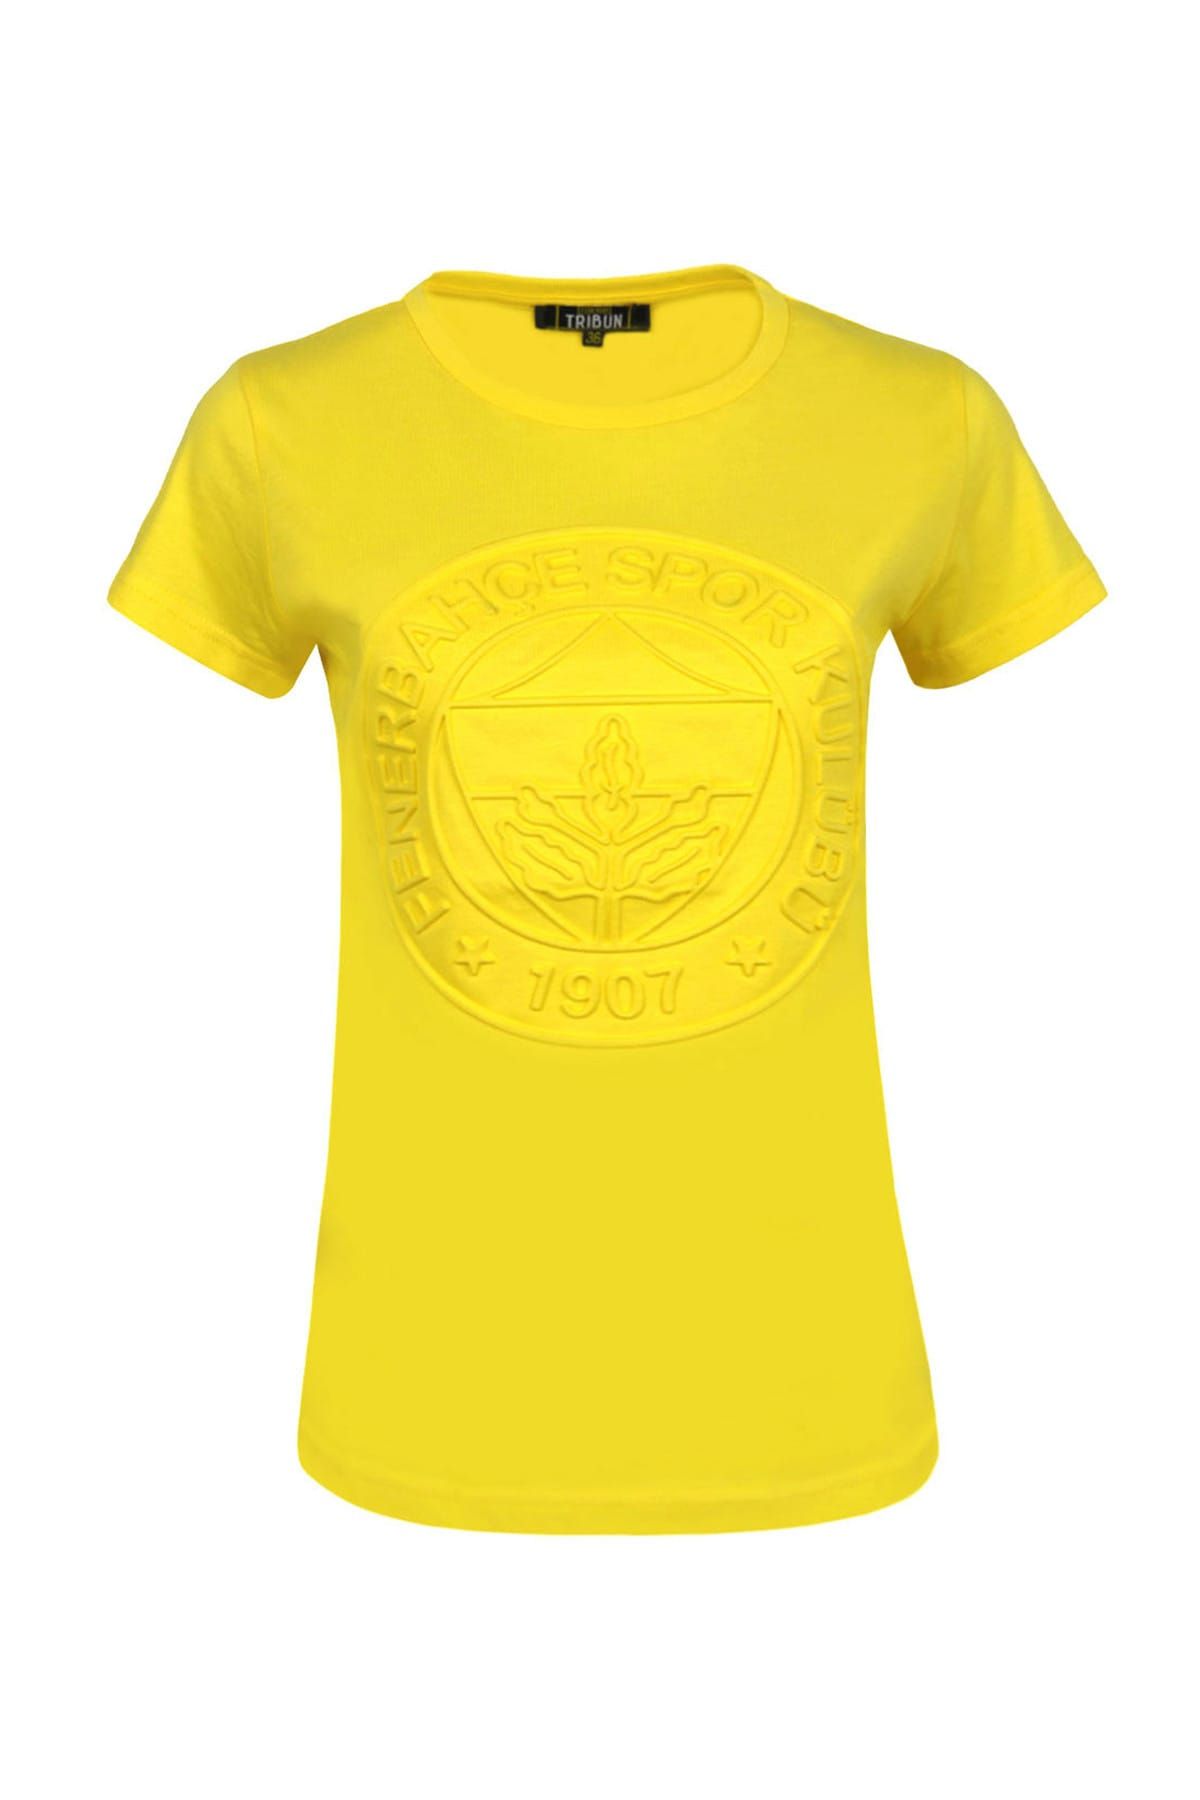 Fenerbahçe Sarı Bayan T-Shirt Kadın Trıbun Tek Renk Kk Emboss A-500-0-34